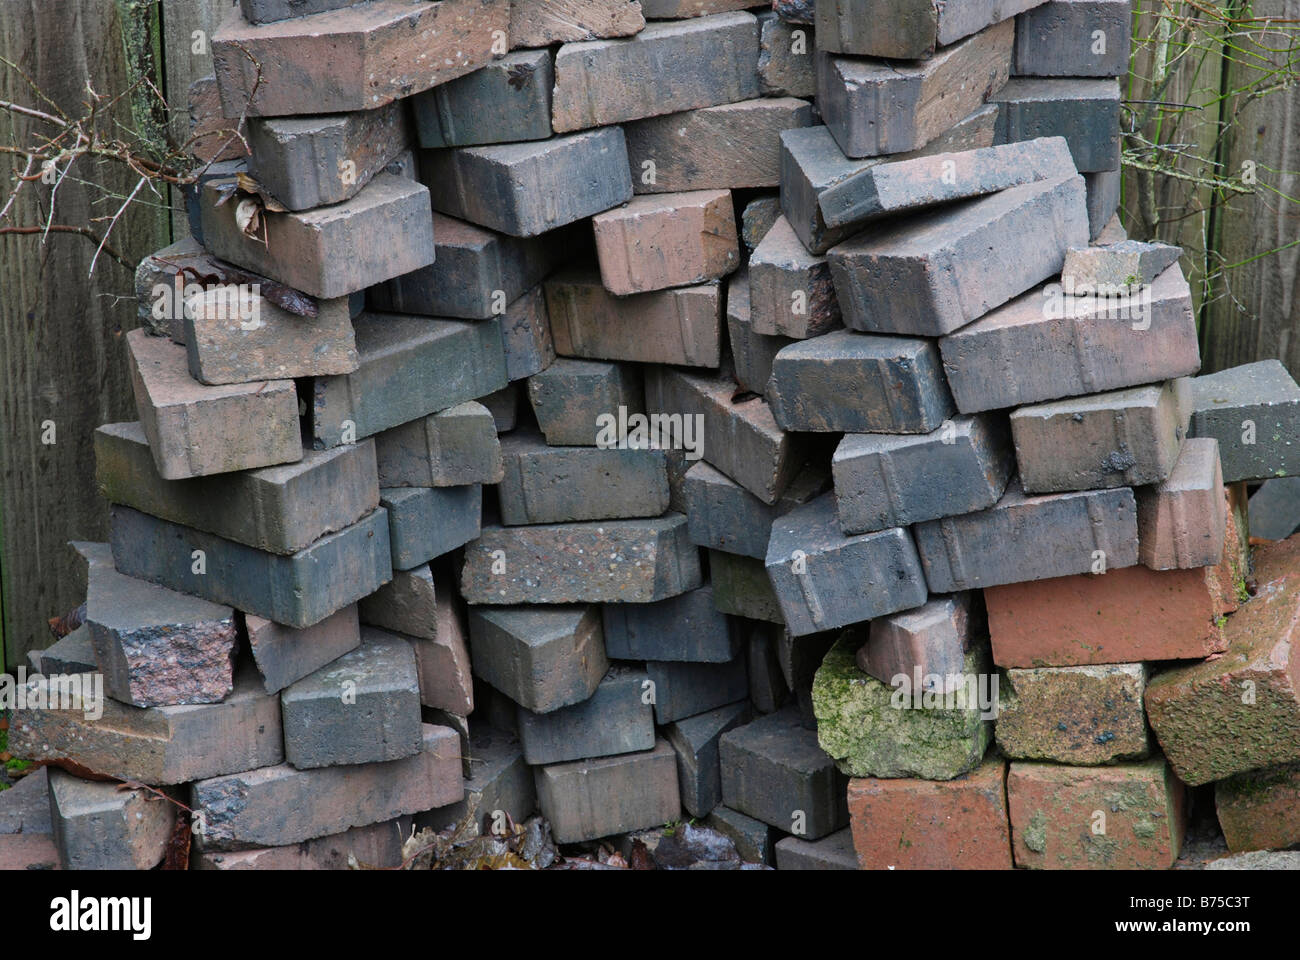 Paving bricks Stock Photo